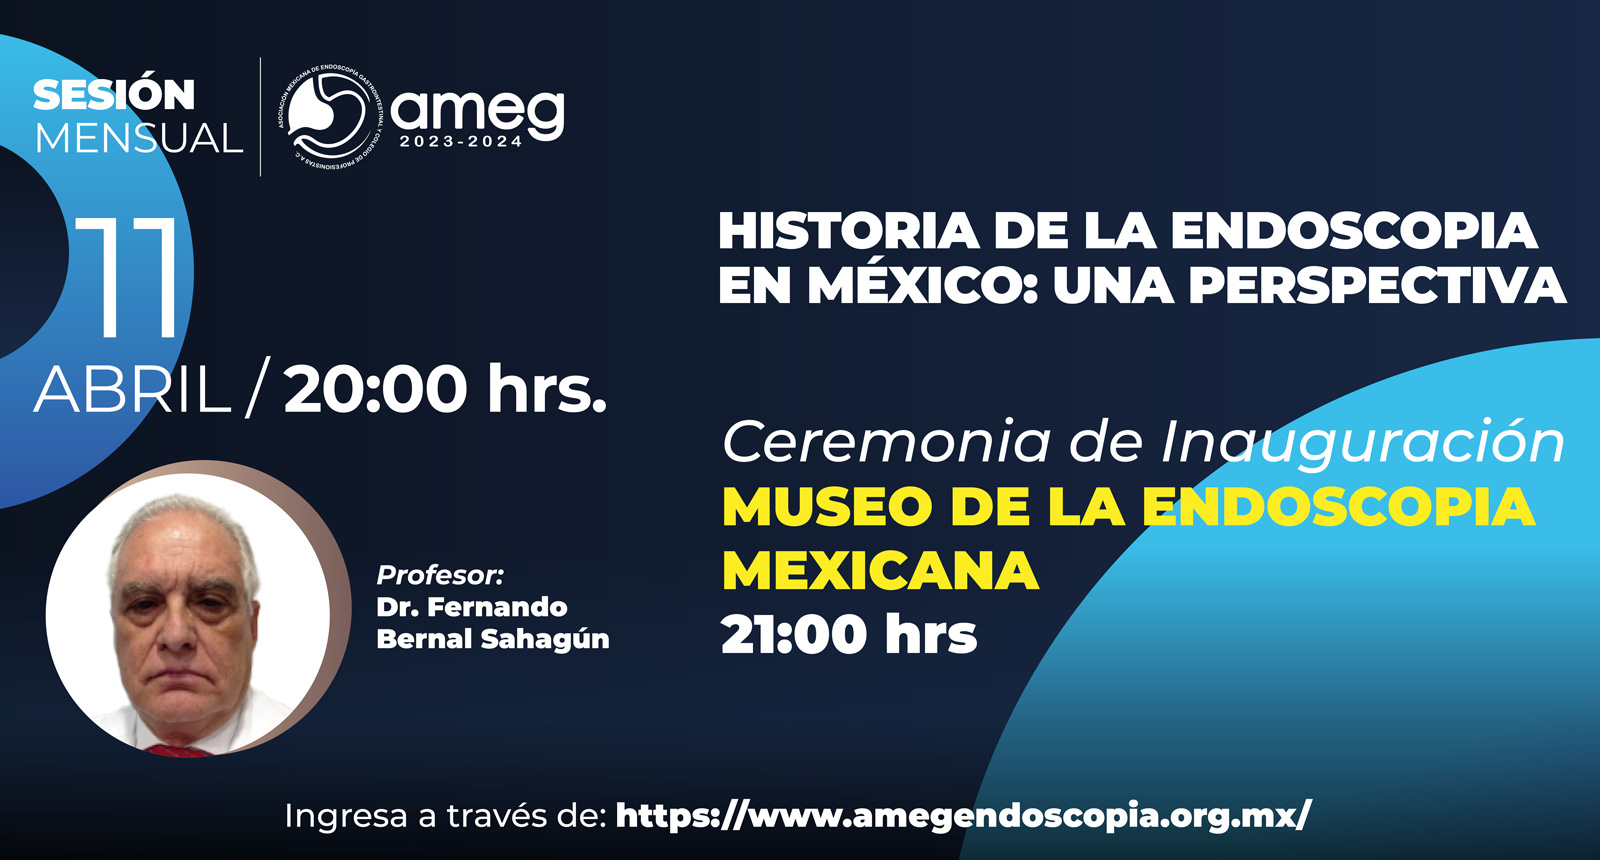 Sesión mensual: Historia de la Endoscopia en México: una perspectiva